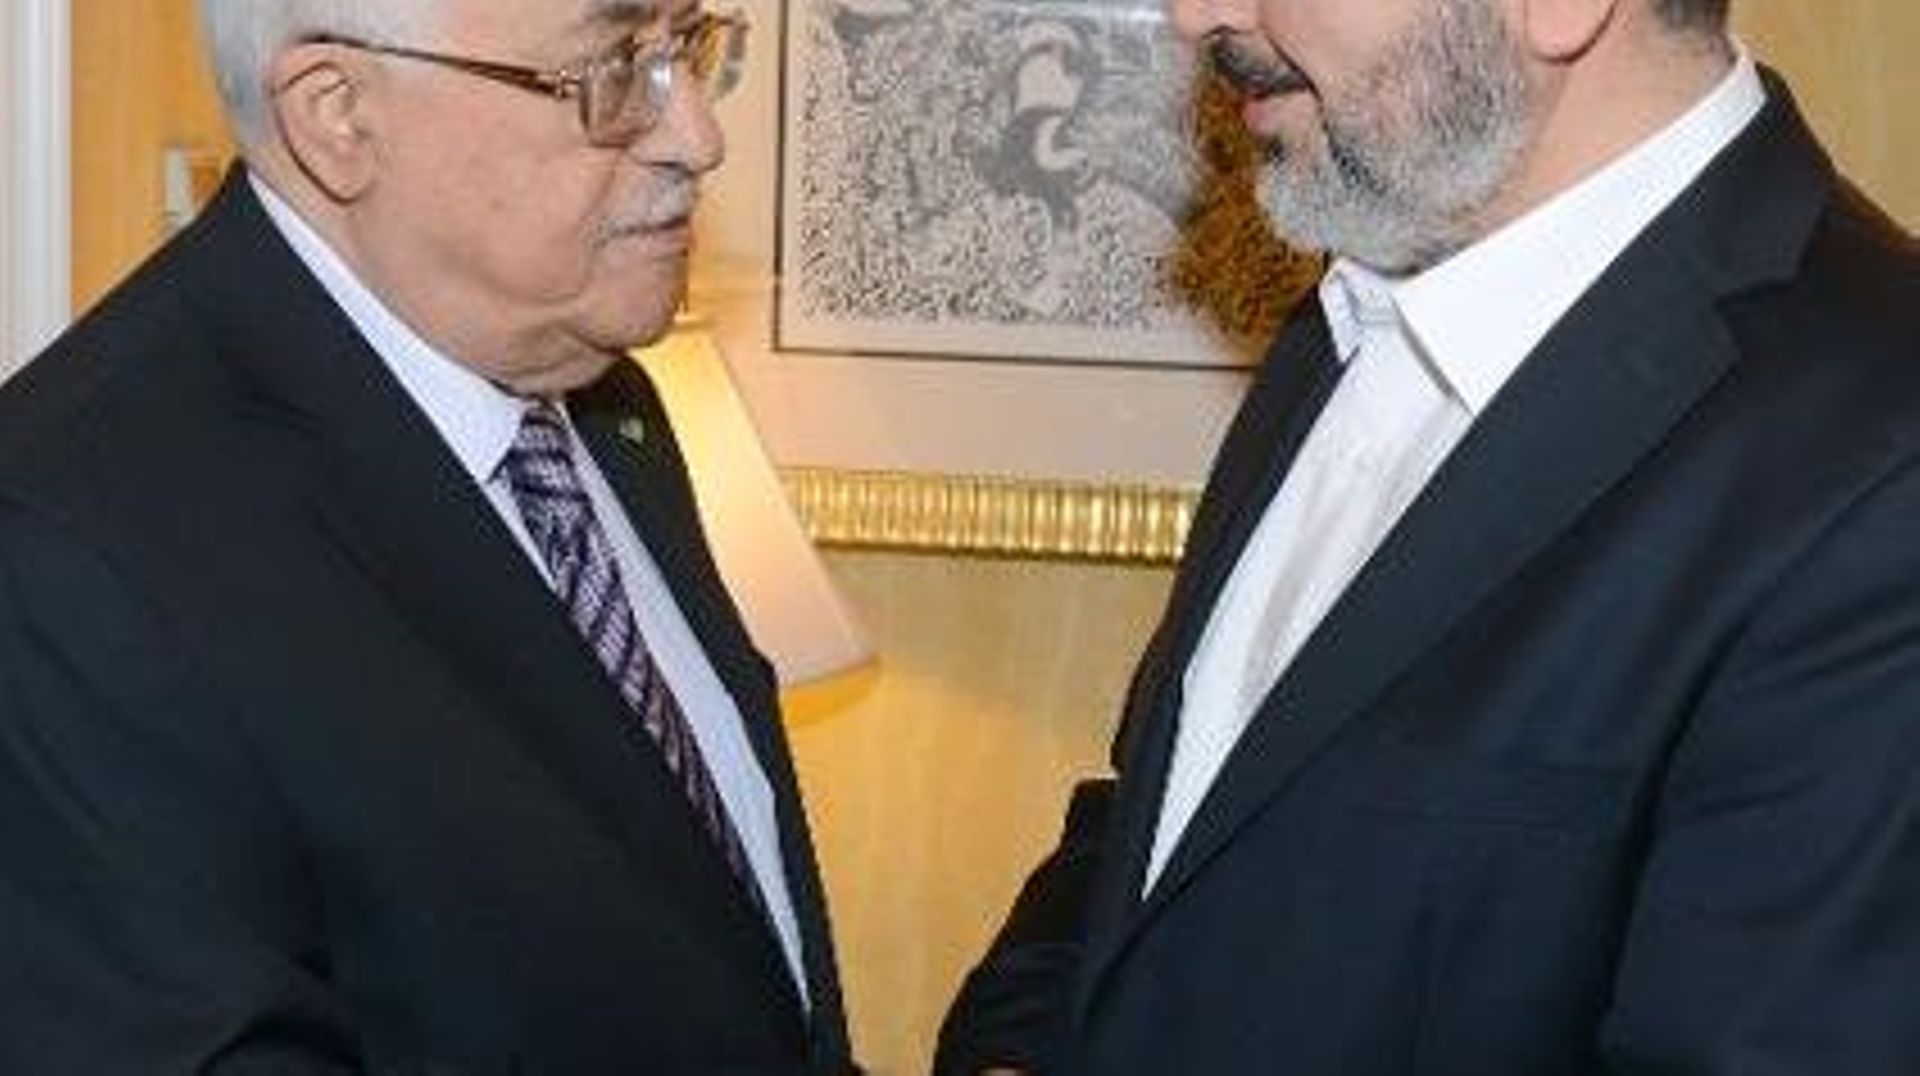 Une image fournie par le bureau de presse palestinien (PPO) montre le président palestinien Mahmoud Abbas (g) ave cle chef du Hamas, Khaled Meshaal le 5 mai 2014 à Doha, au Qatar 